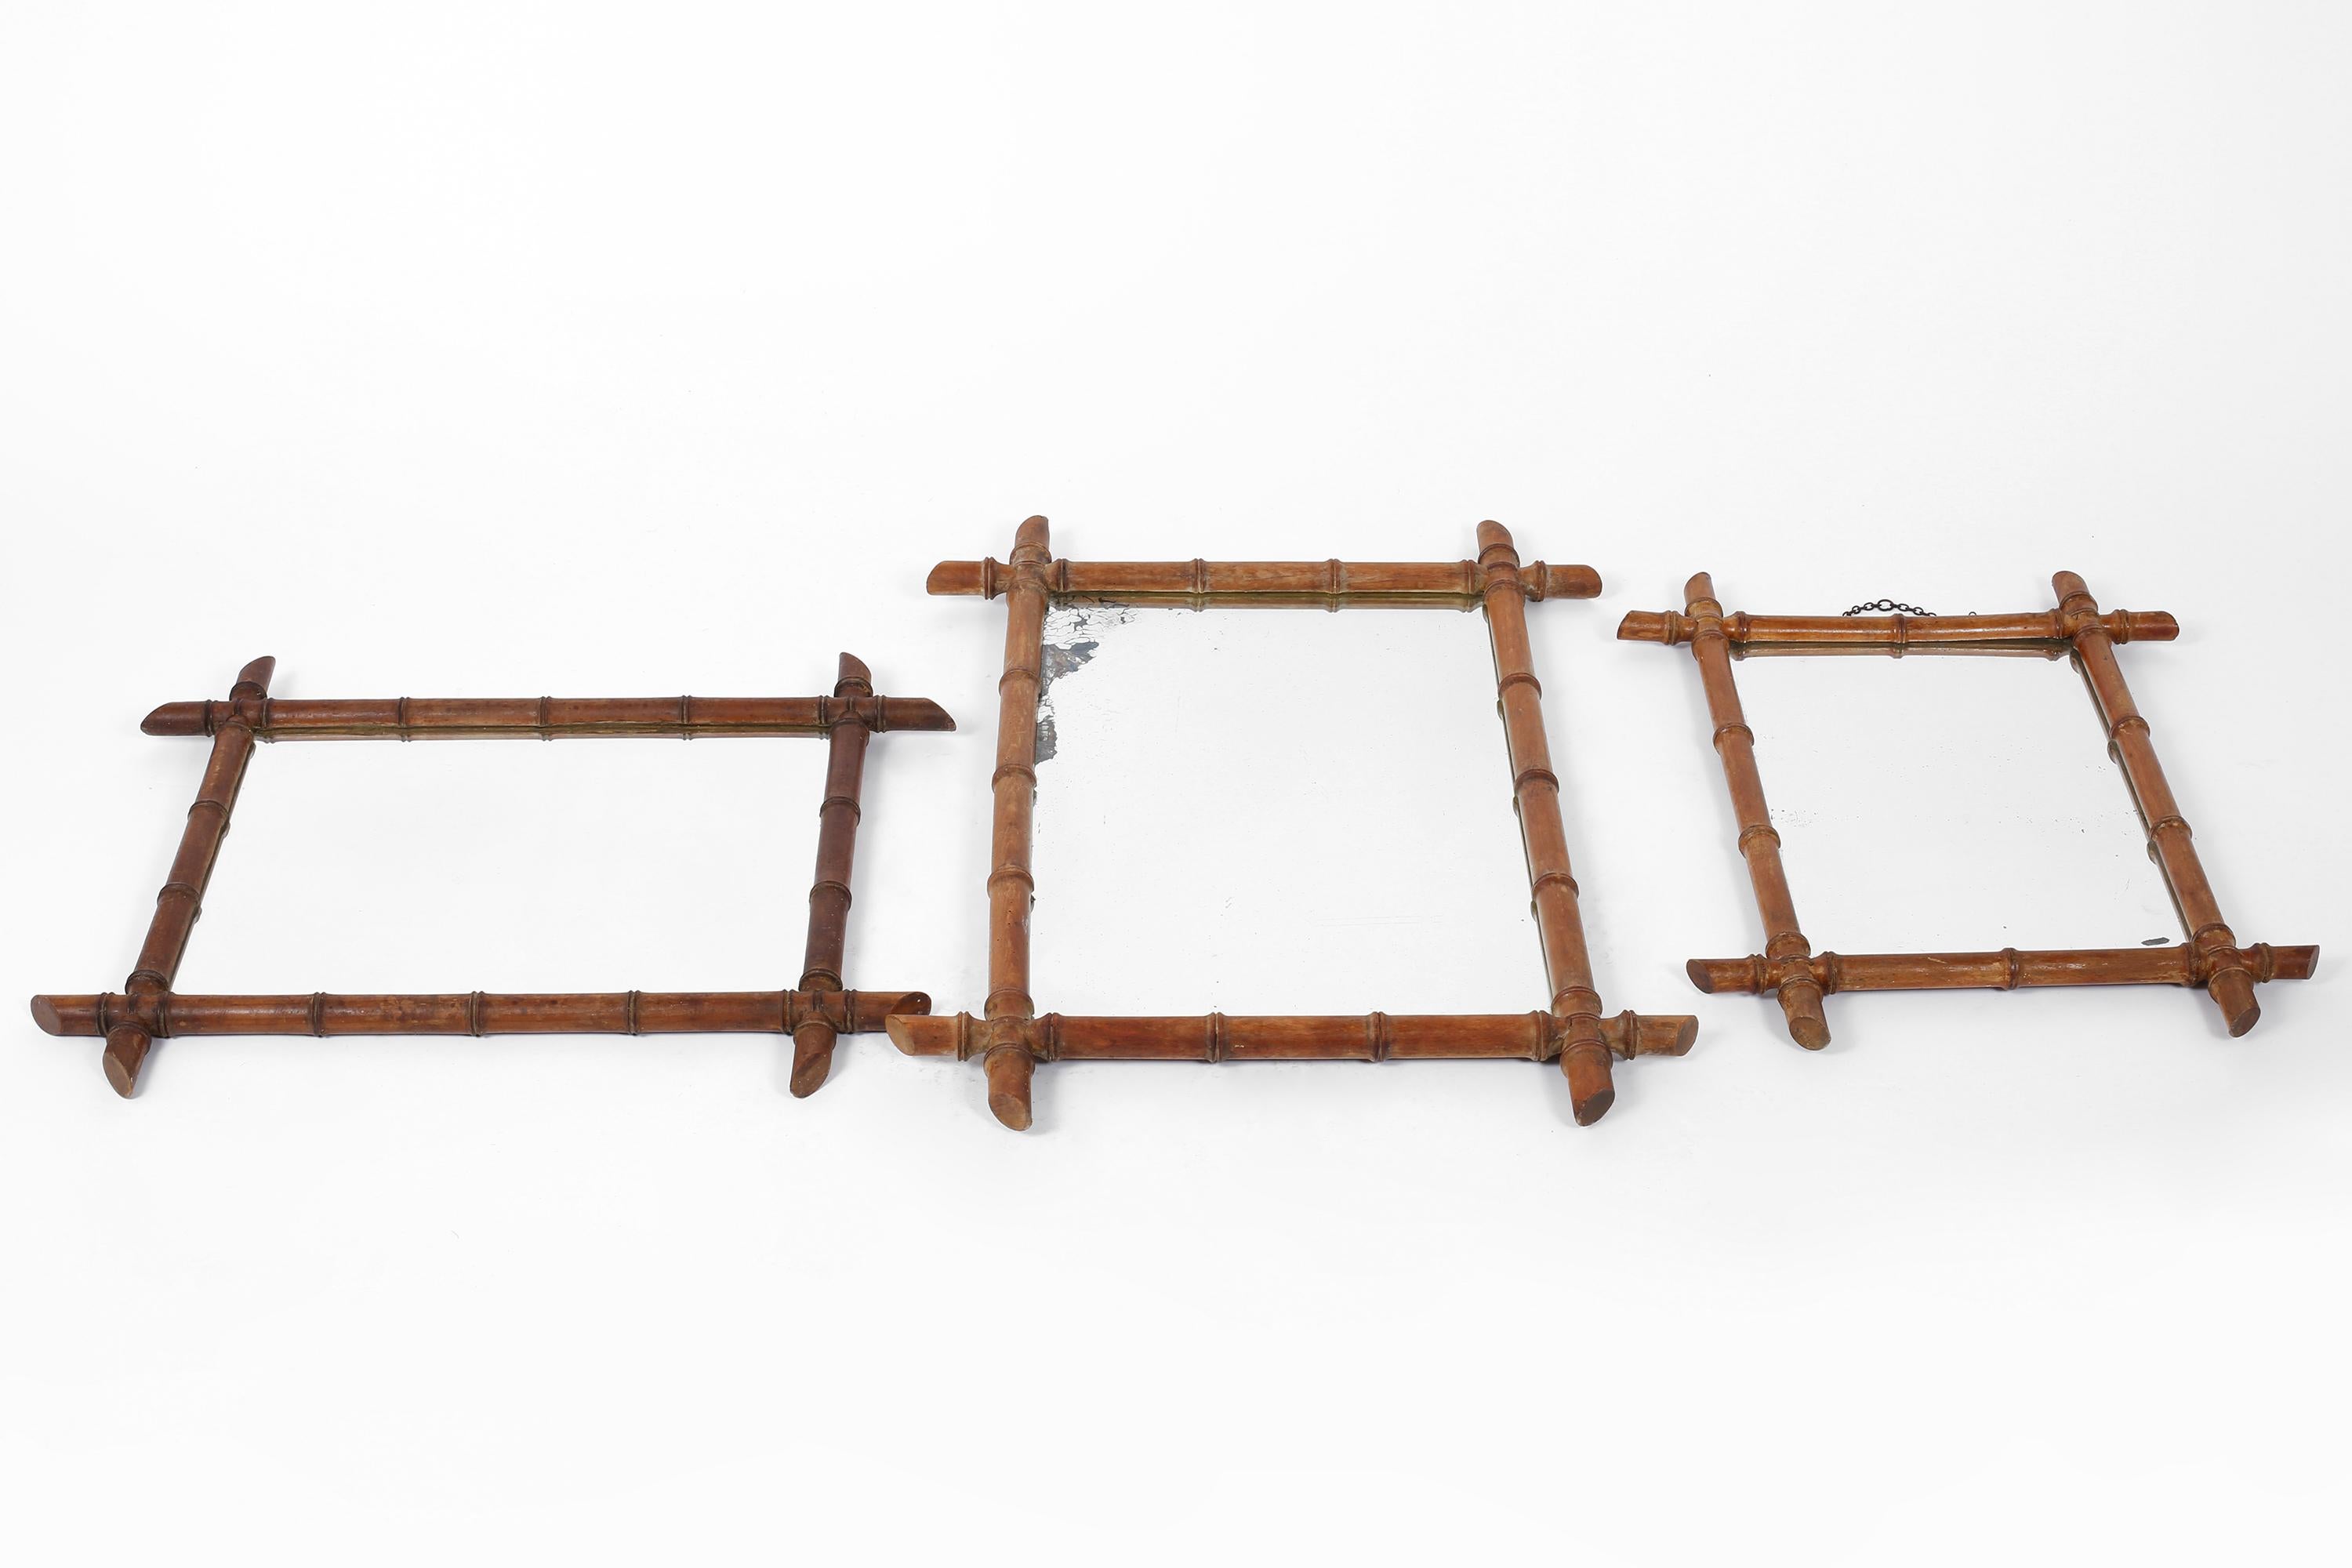 Un trio de miroirs en bois sculpté du début du 20e siècle avec des cadres stylisés en faux bambou et de belles rousseurs sur deux des plaques. Français, vers 1900.

Gauche : L65 x H53.5 cm

Centre : L57 x H78 cm

Droit : L47 x H61,5 cm.